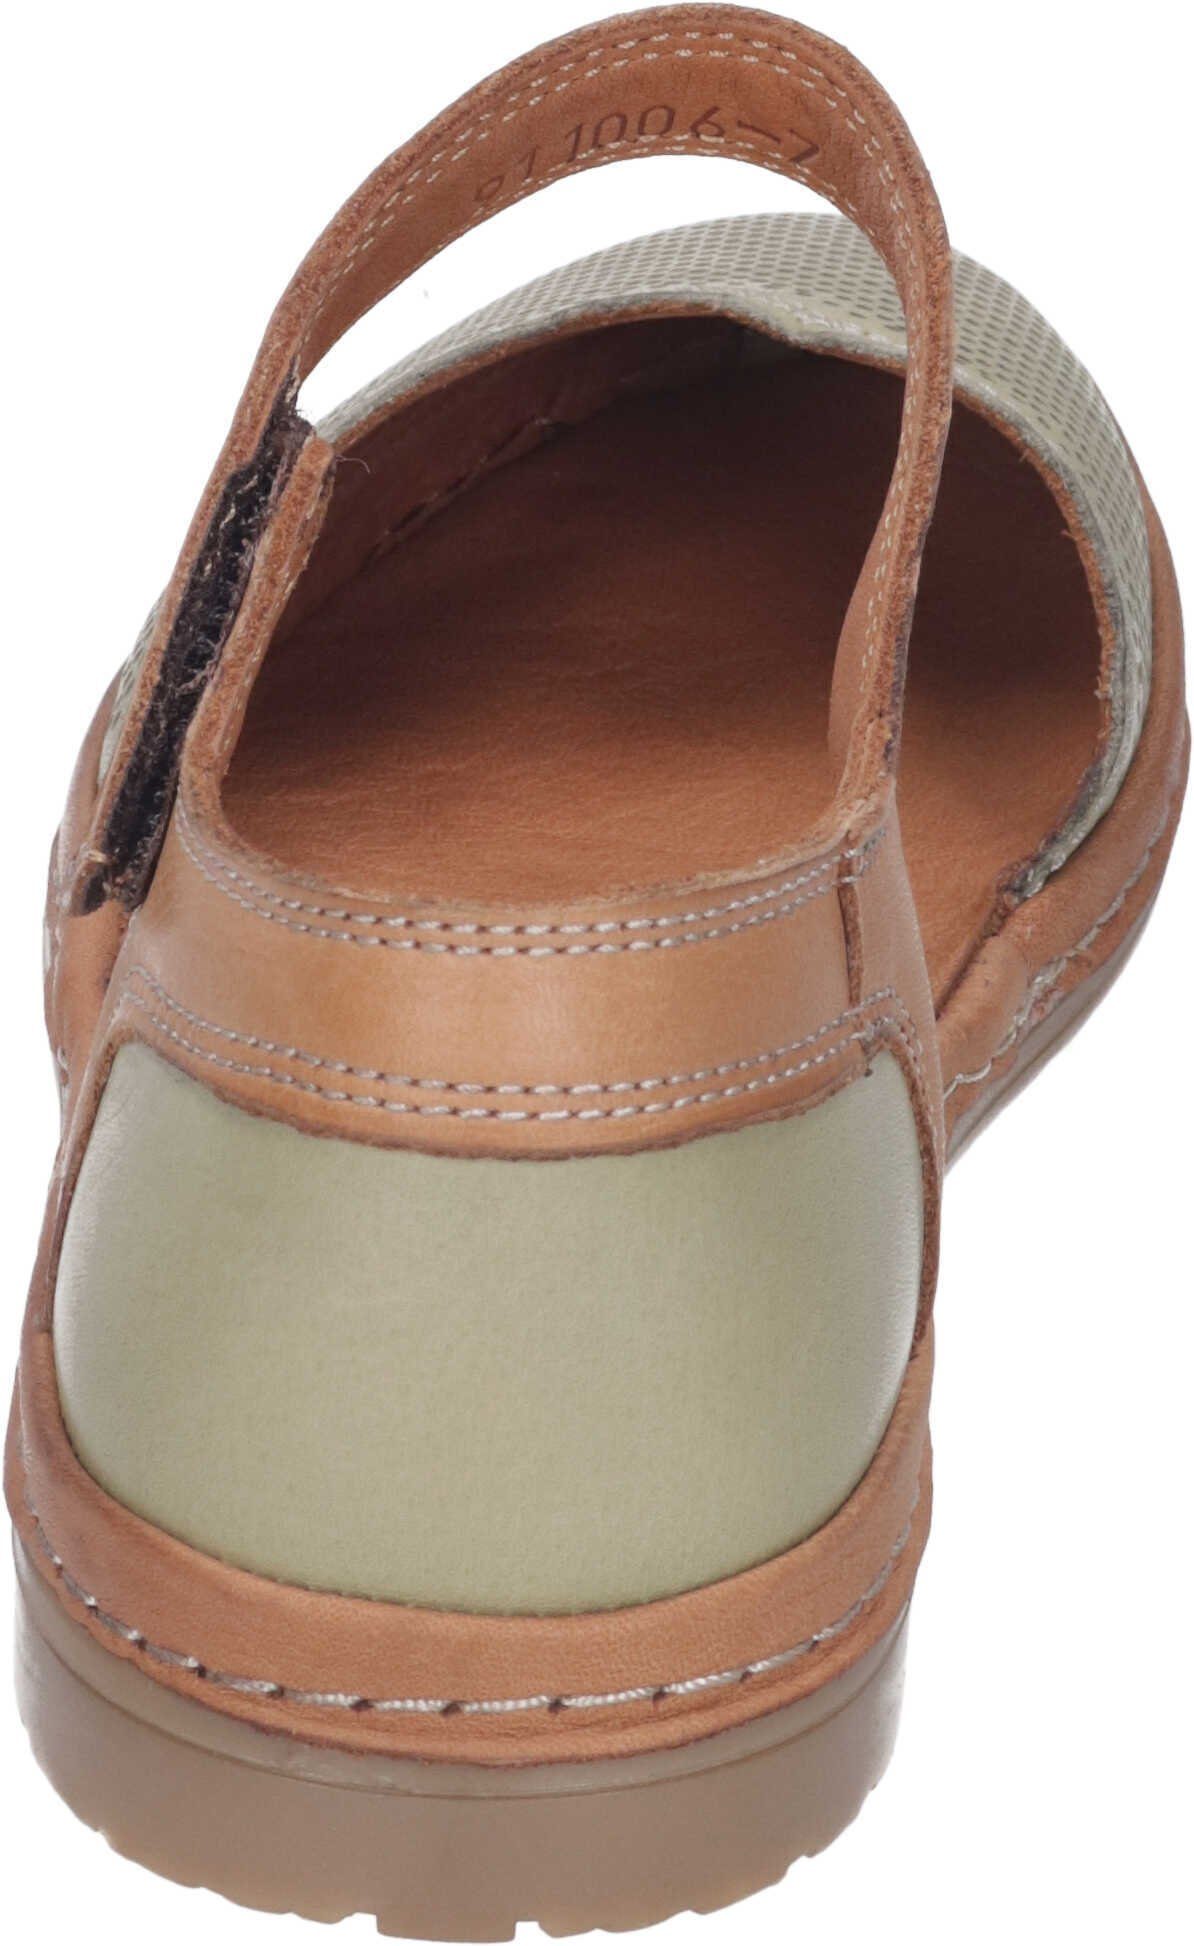 Leder Sandalen echtem Manitu Sandalette grün aus